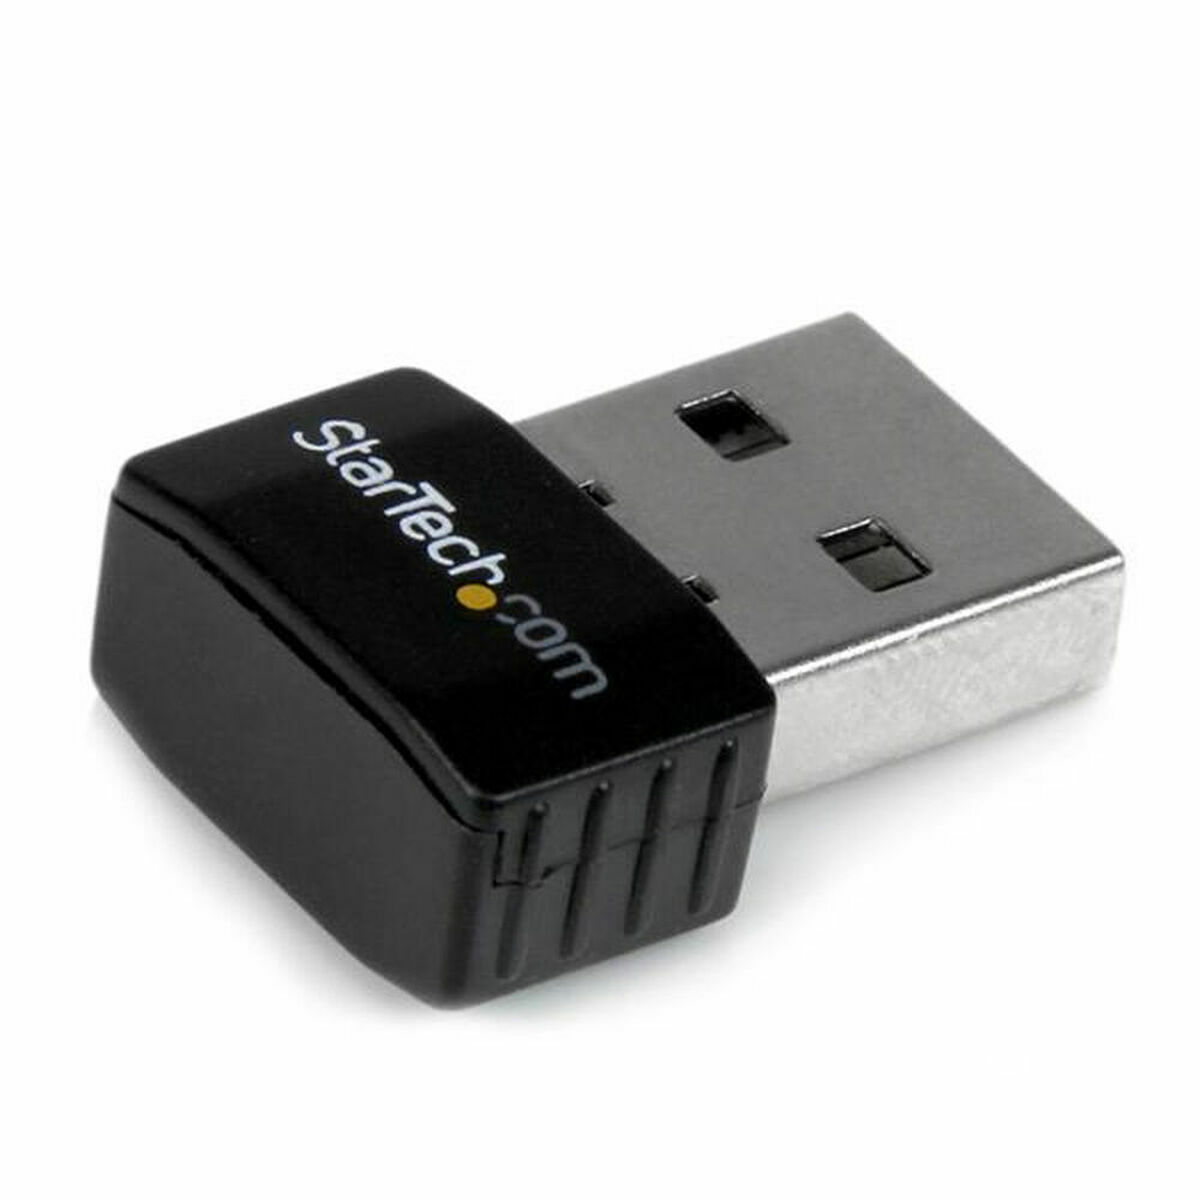 Adaptateur USB Wifi Startech USB300WN2X2C        